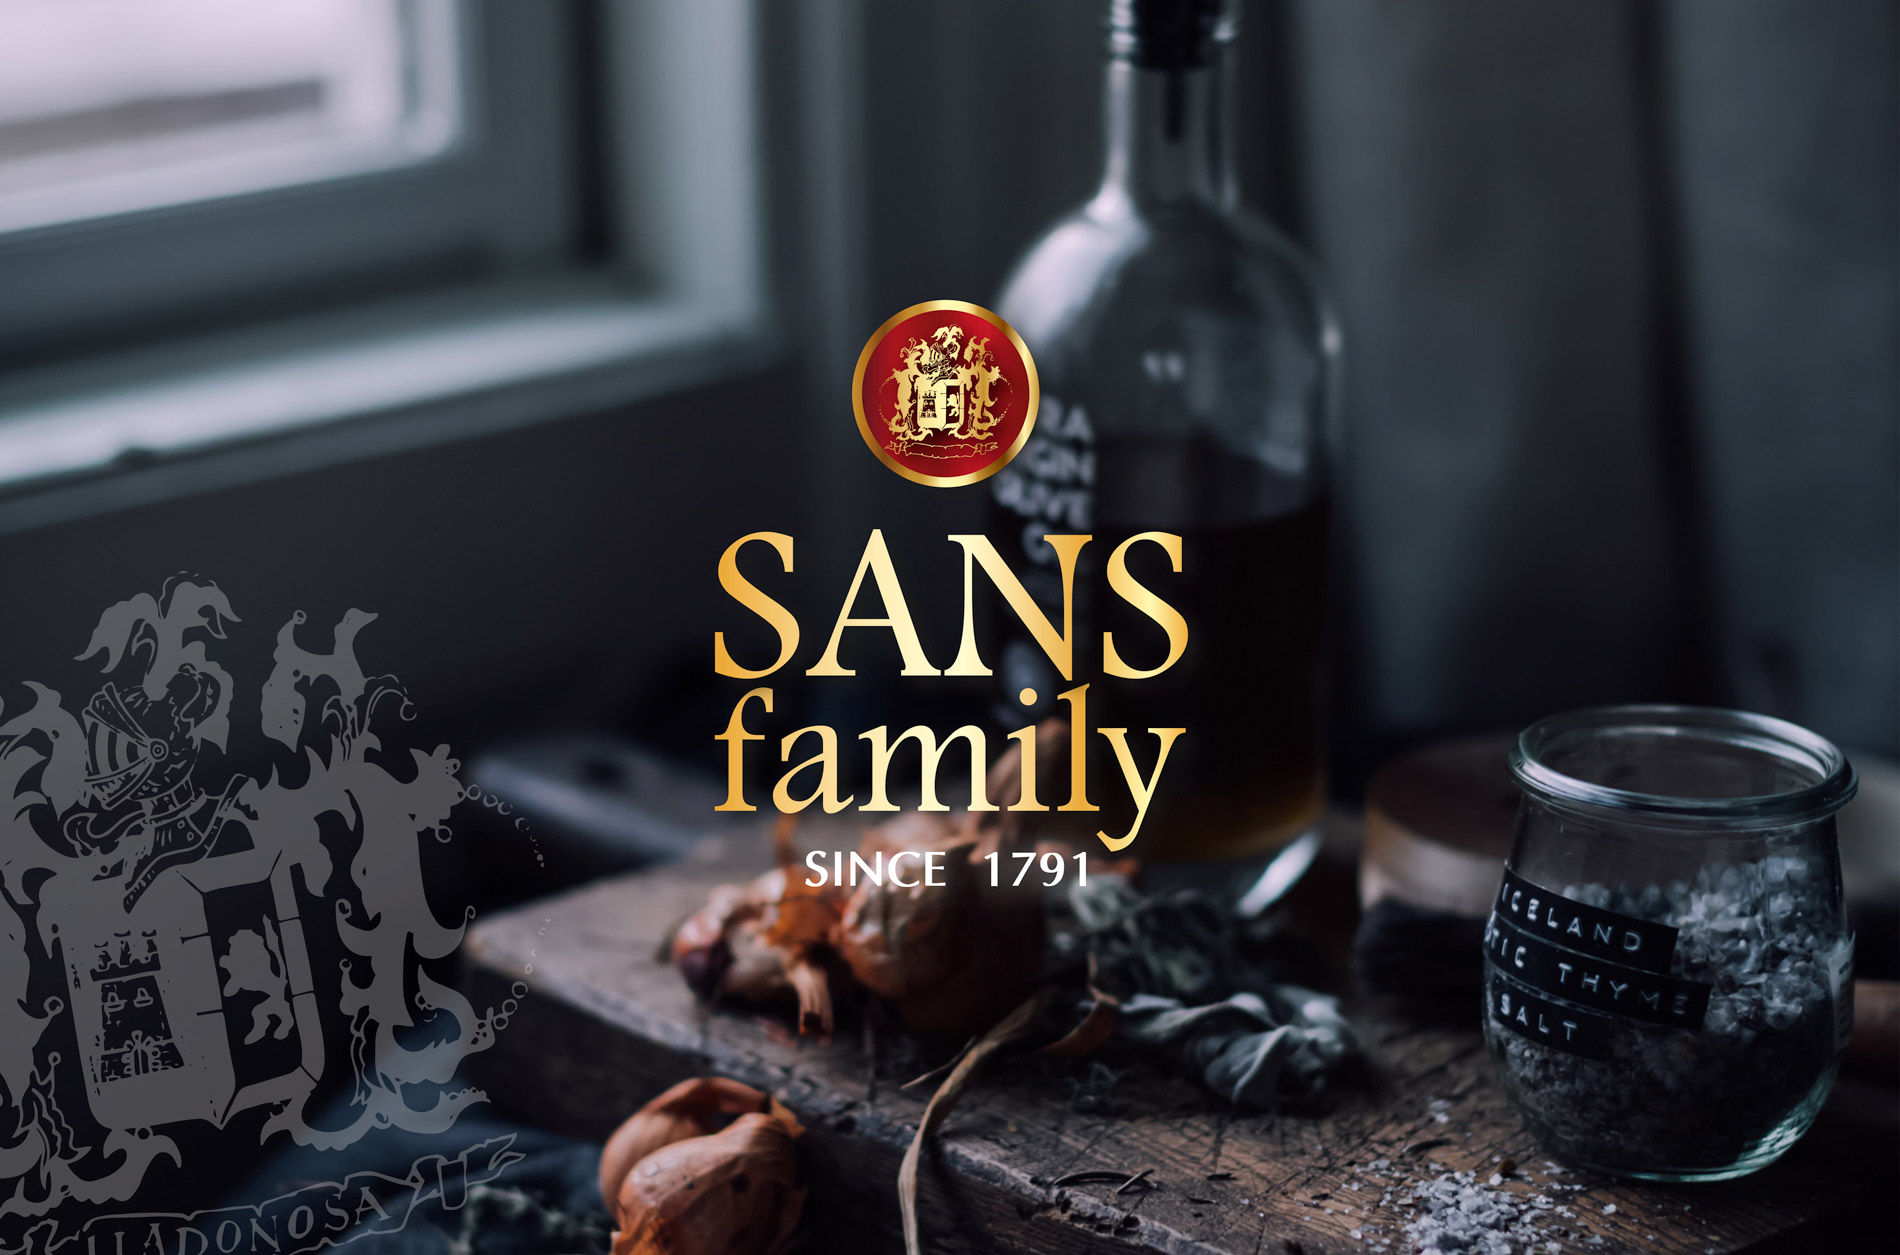 Diseño de logo e imagen corporativa para etiqueta de aceite de oliva virgen extra SANS FAMILY